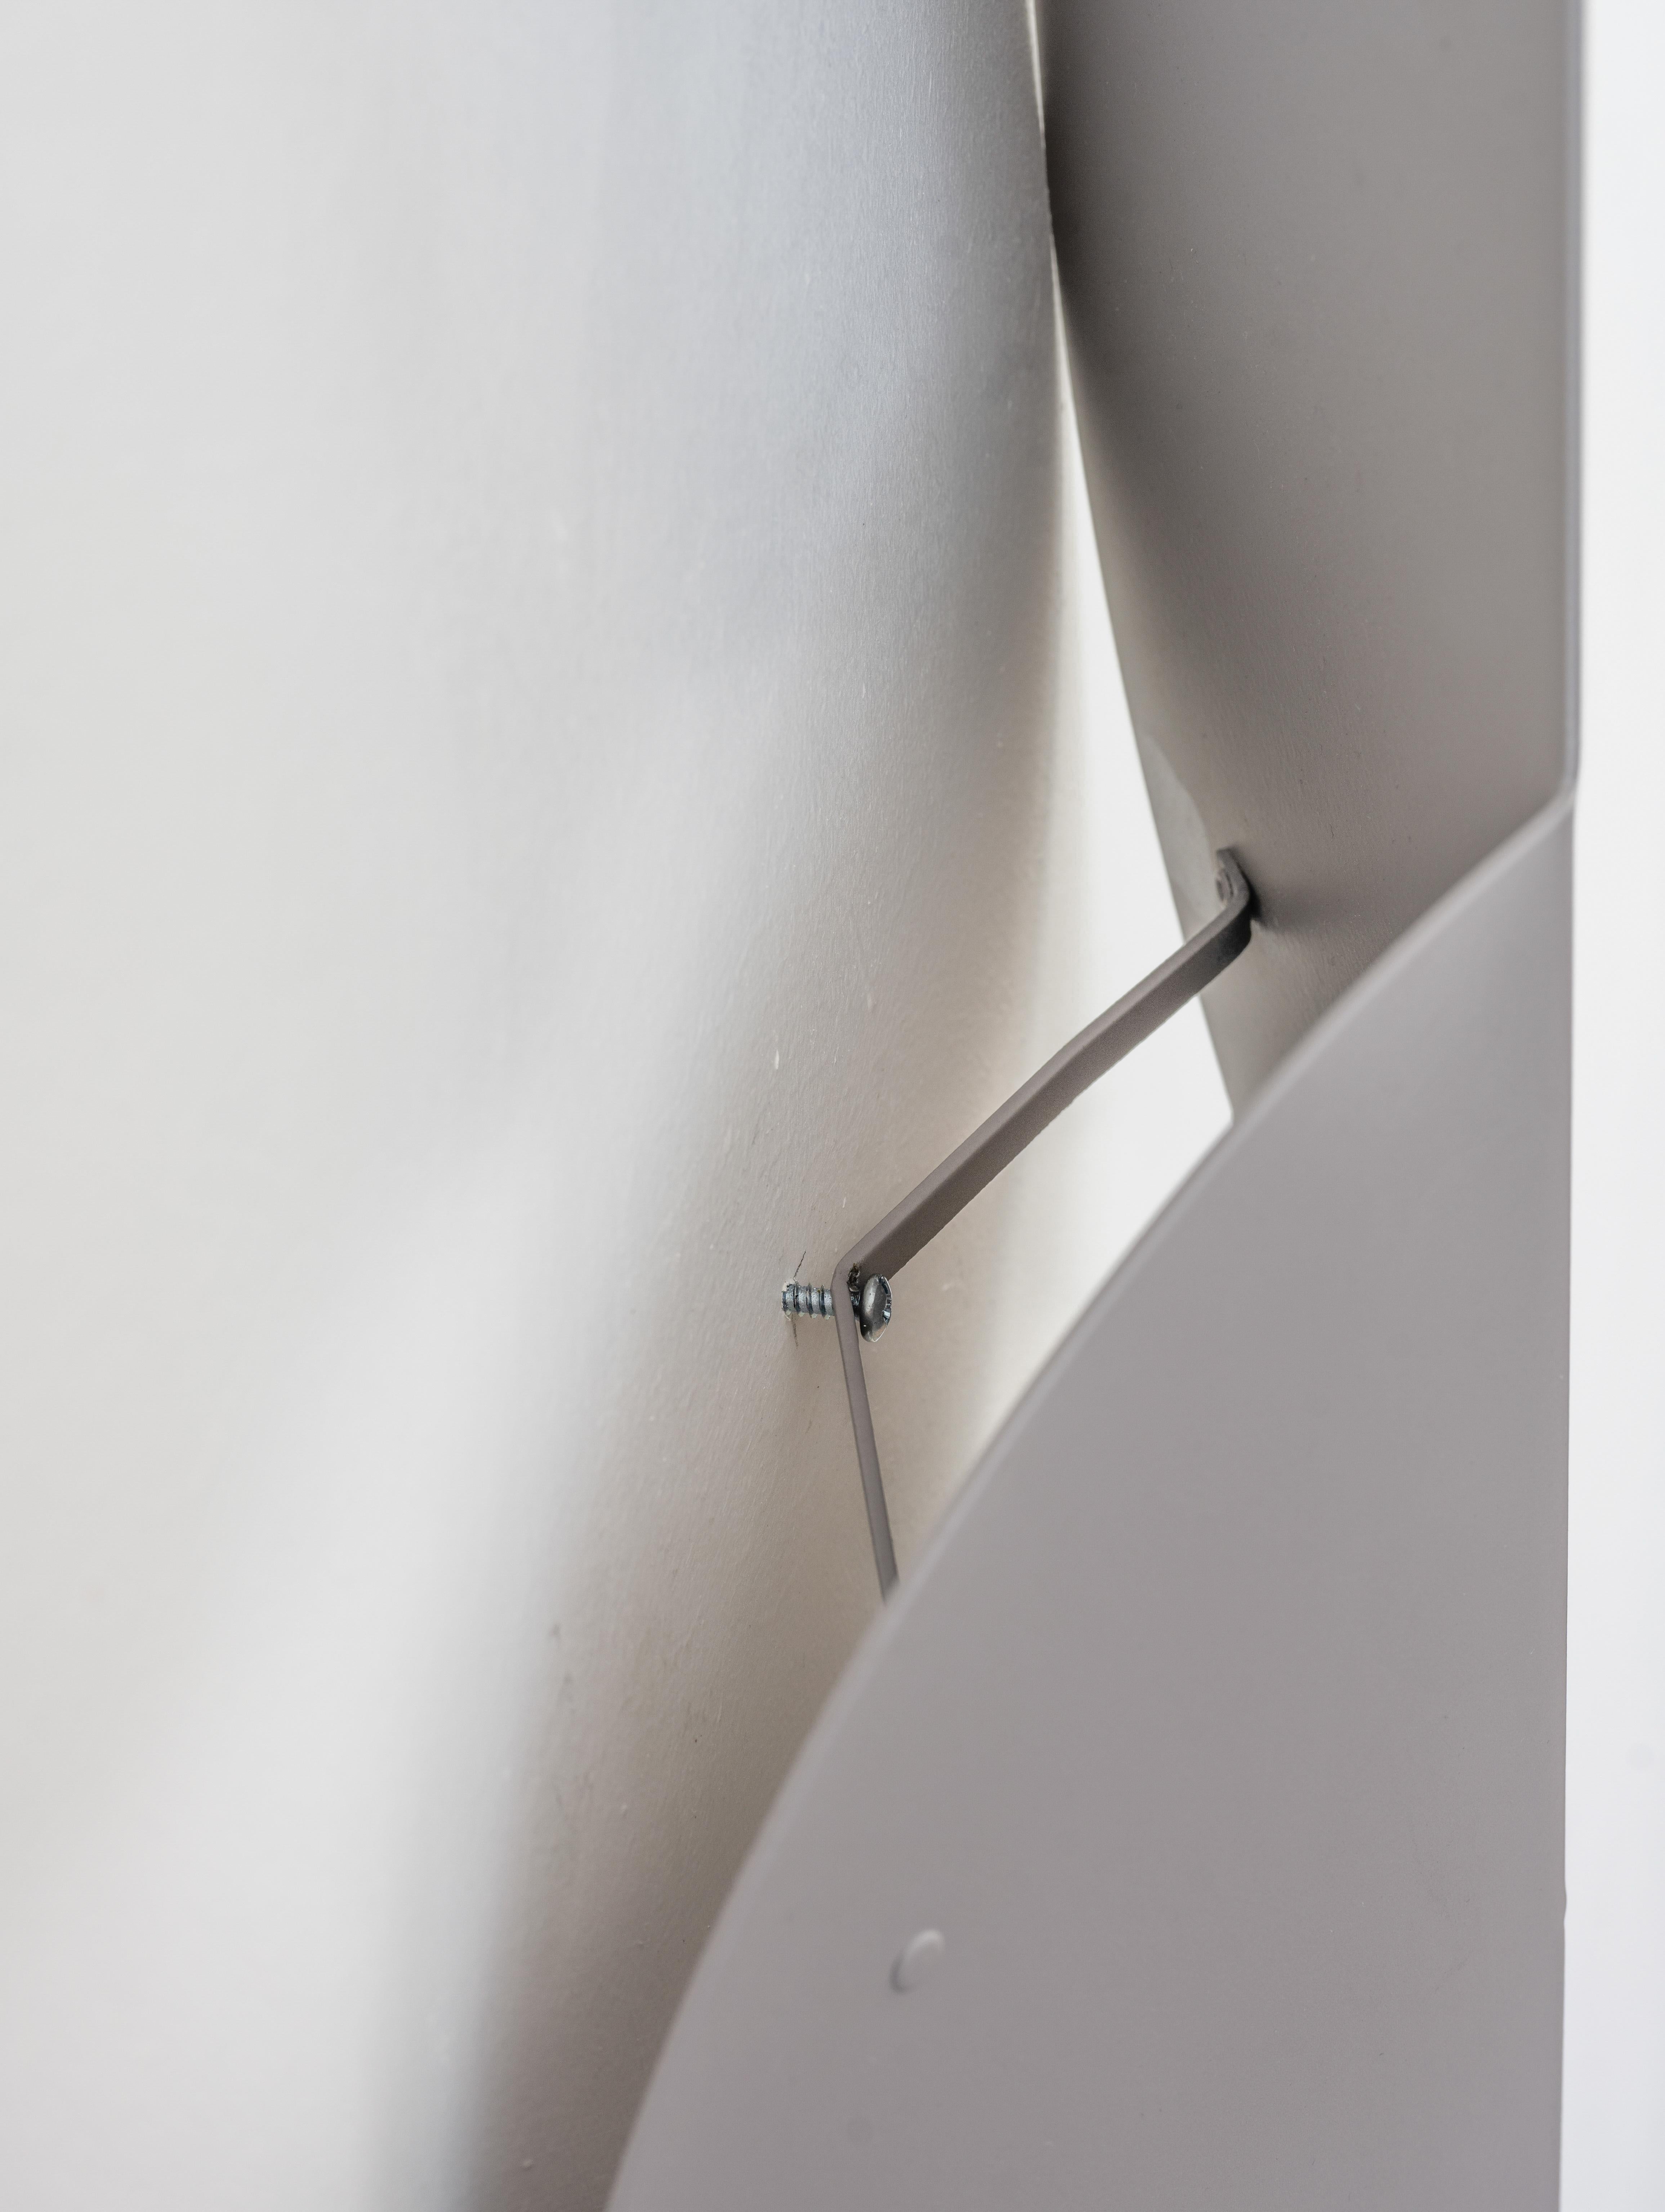 Der Wandbehang Tip-Top in Violettgrau ist eine moderne Erkundung von Form, Faltung und Farbe, inspiriert von den Bauhaus-Designprinzipien der Einfachheit und geometrischen Form. Es kann allein oder zusammen mit anderen Stücken aus der Fold